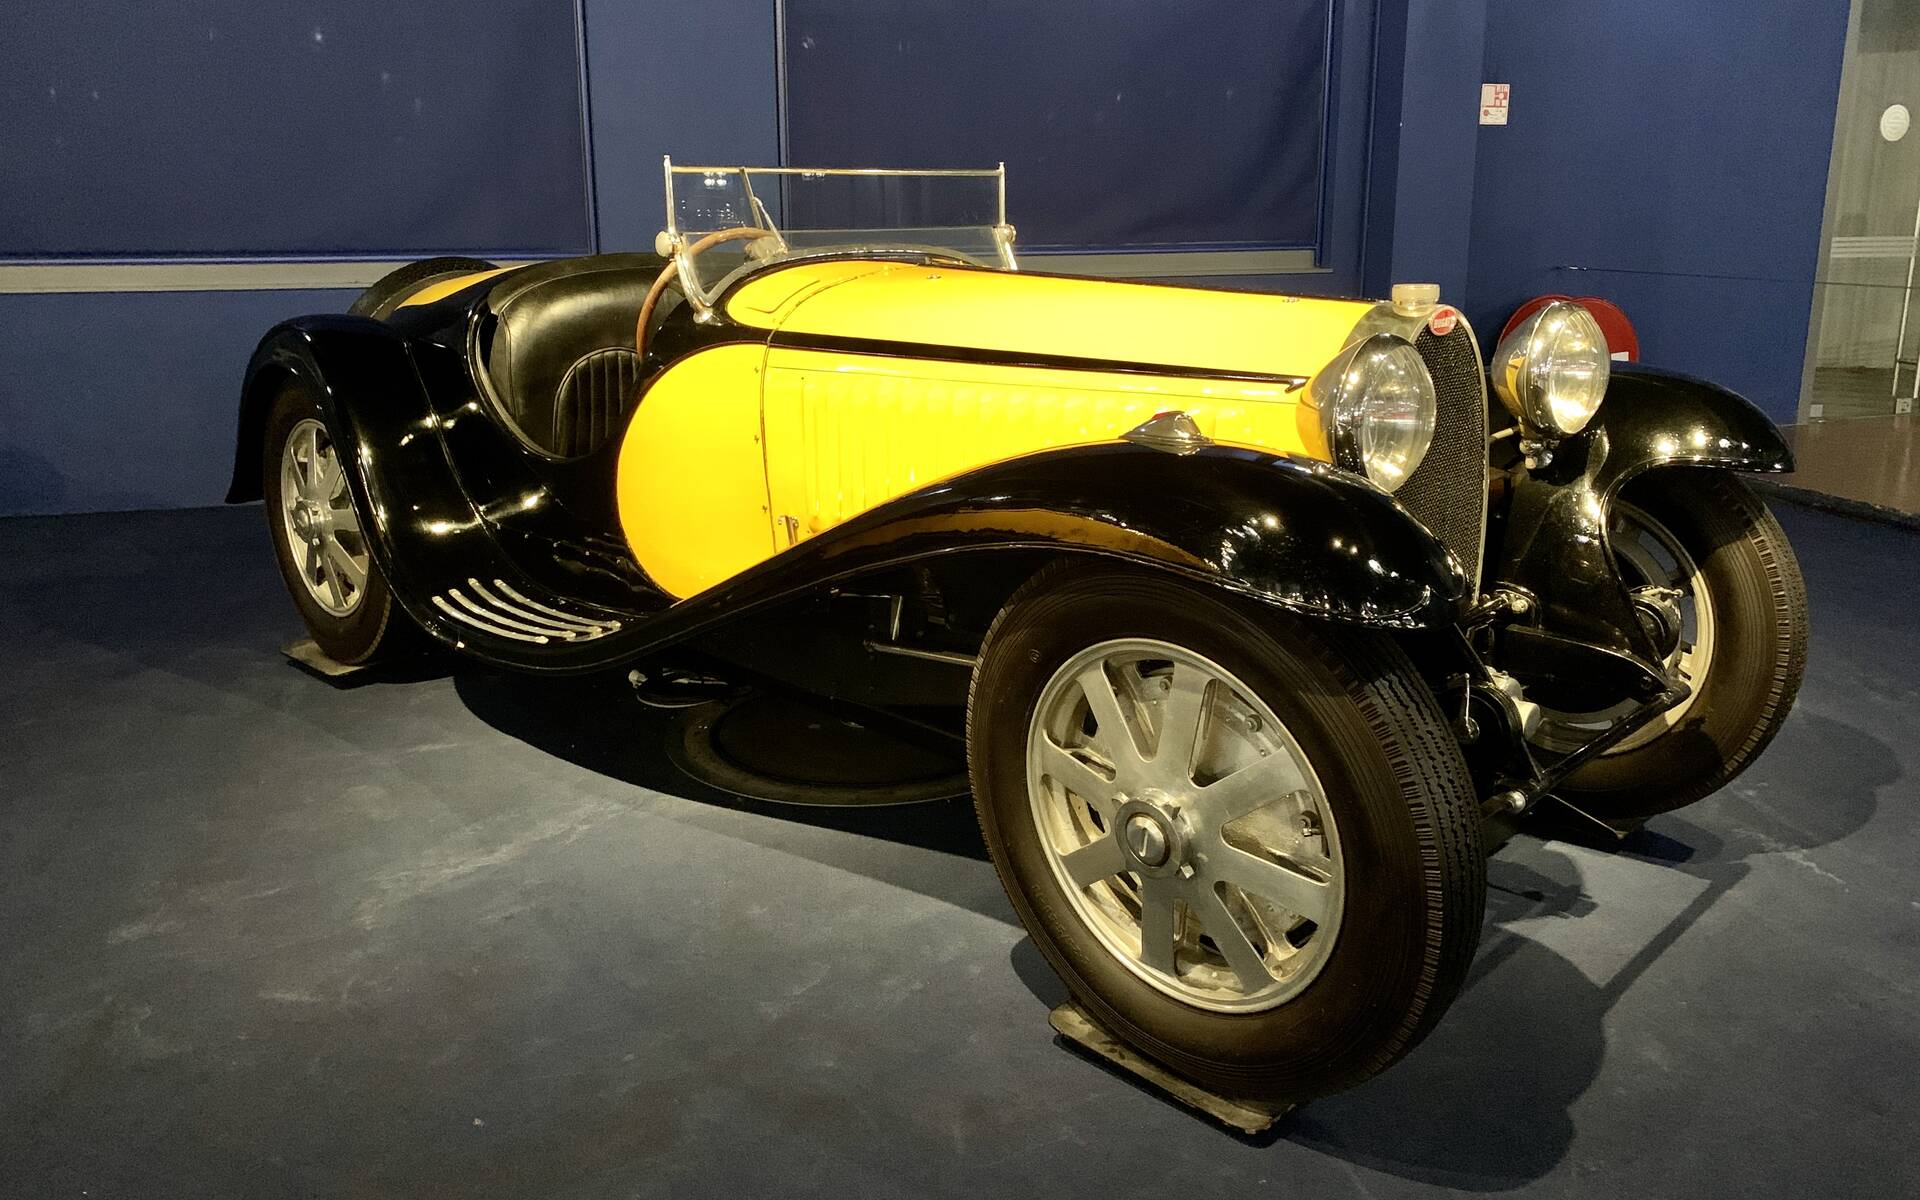 En photos : une centaine de Bugatti réunies dans un même musée 503101-en-photos-des-dizaines-de-bugatti-reunies-dans-un-meme-musee